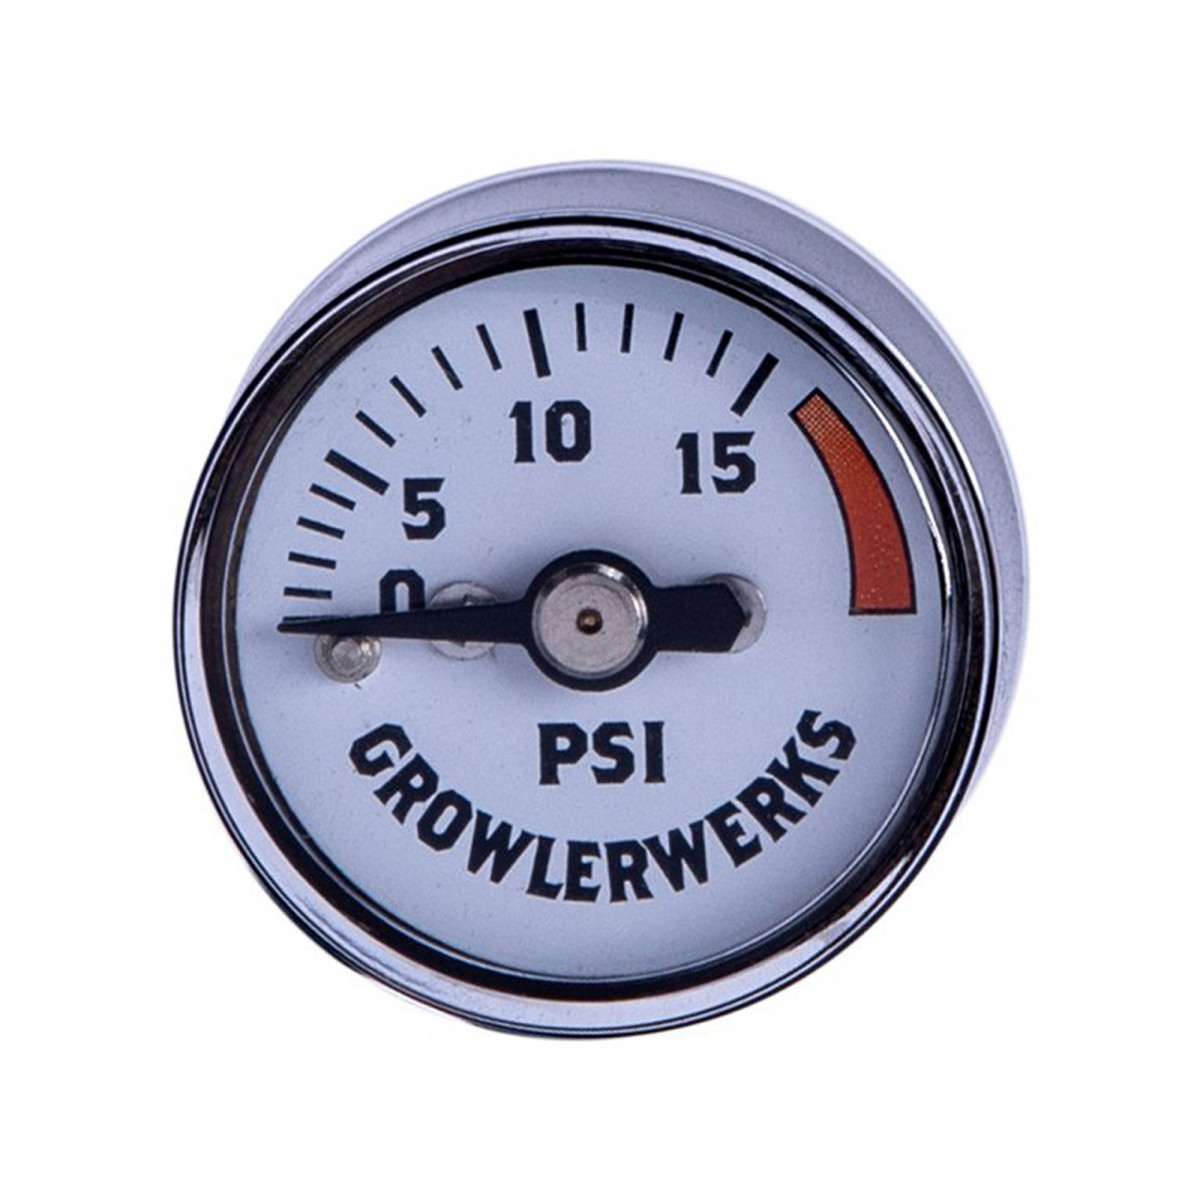 GrowlerWerks uKeg™ pressure gauge